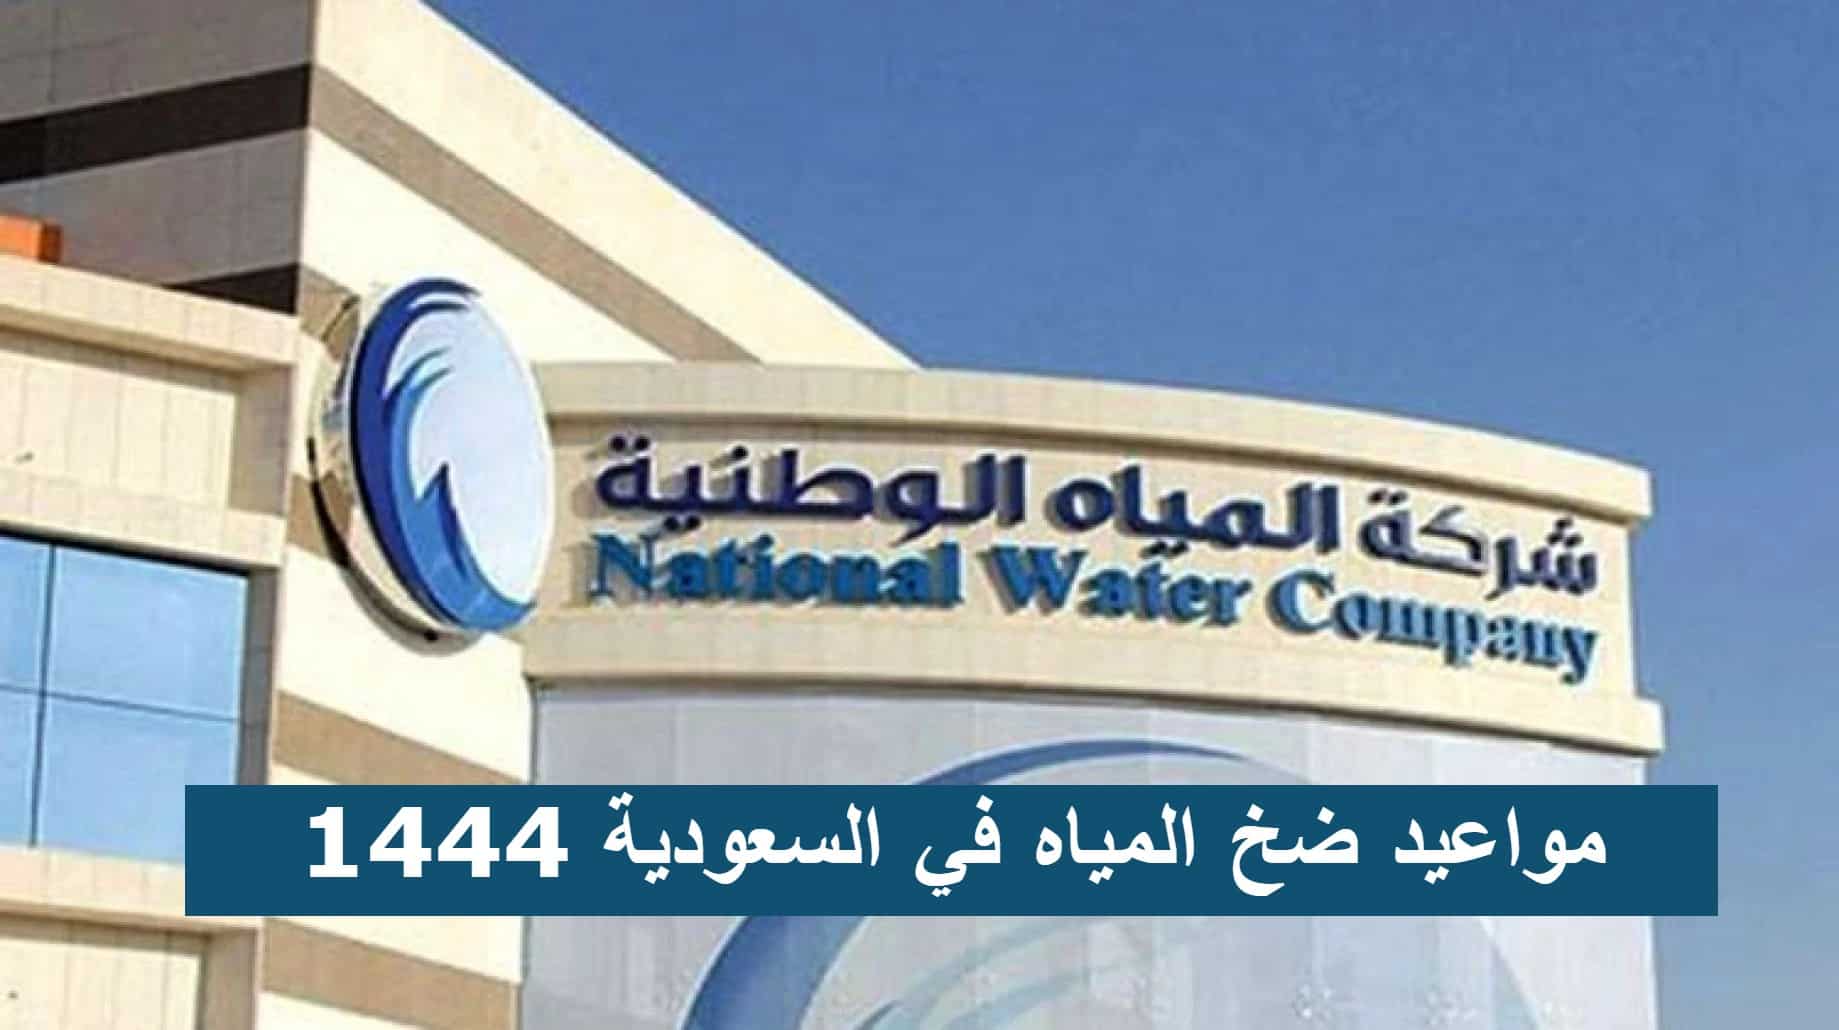 خطوات الاستعلام عن مواعيد ضخ المياه في السعودية 1444 عبر موقع شركة مياه الشرب الوطنية